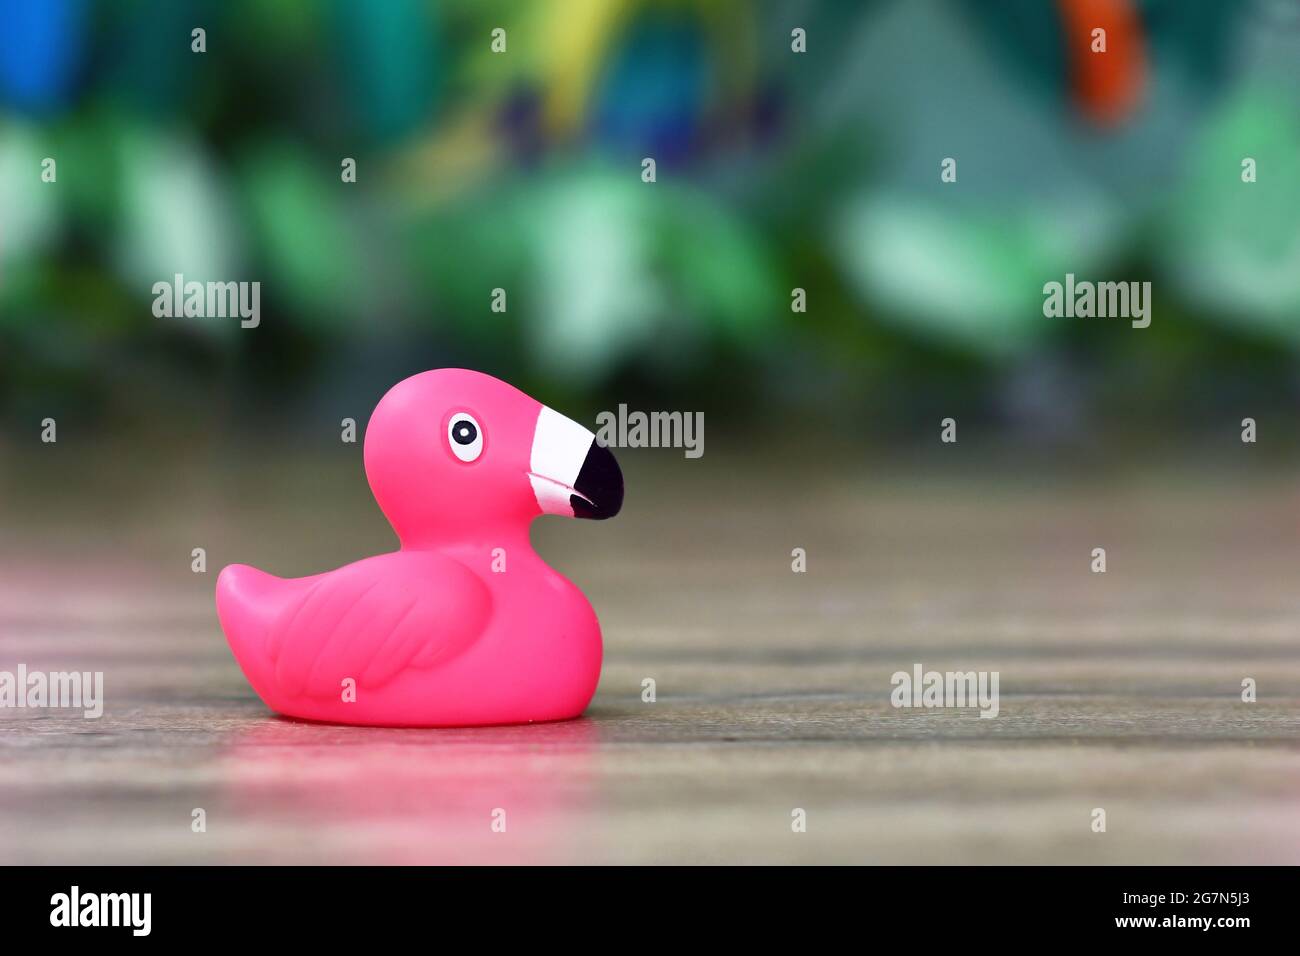 https://c8.alamy.com/compde/2g7n5j3/ein-einziger-flamingo-vogel-aus-rosa-kautschuk-mit-kopieplatz-2g7n5j3.jpg